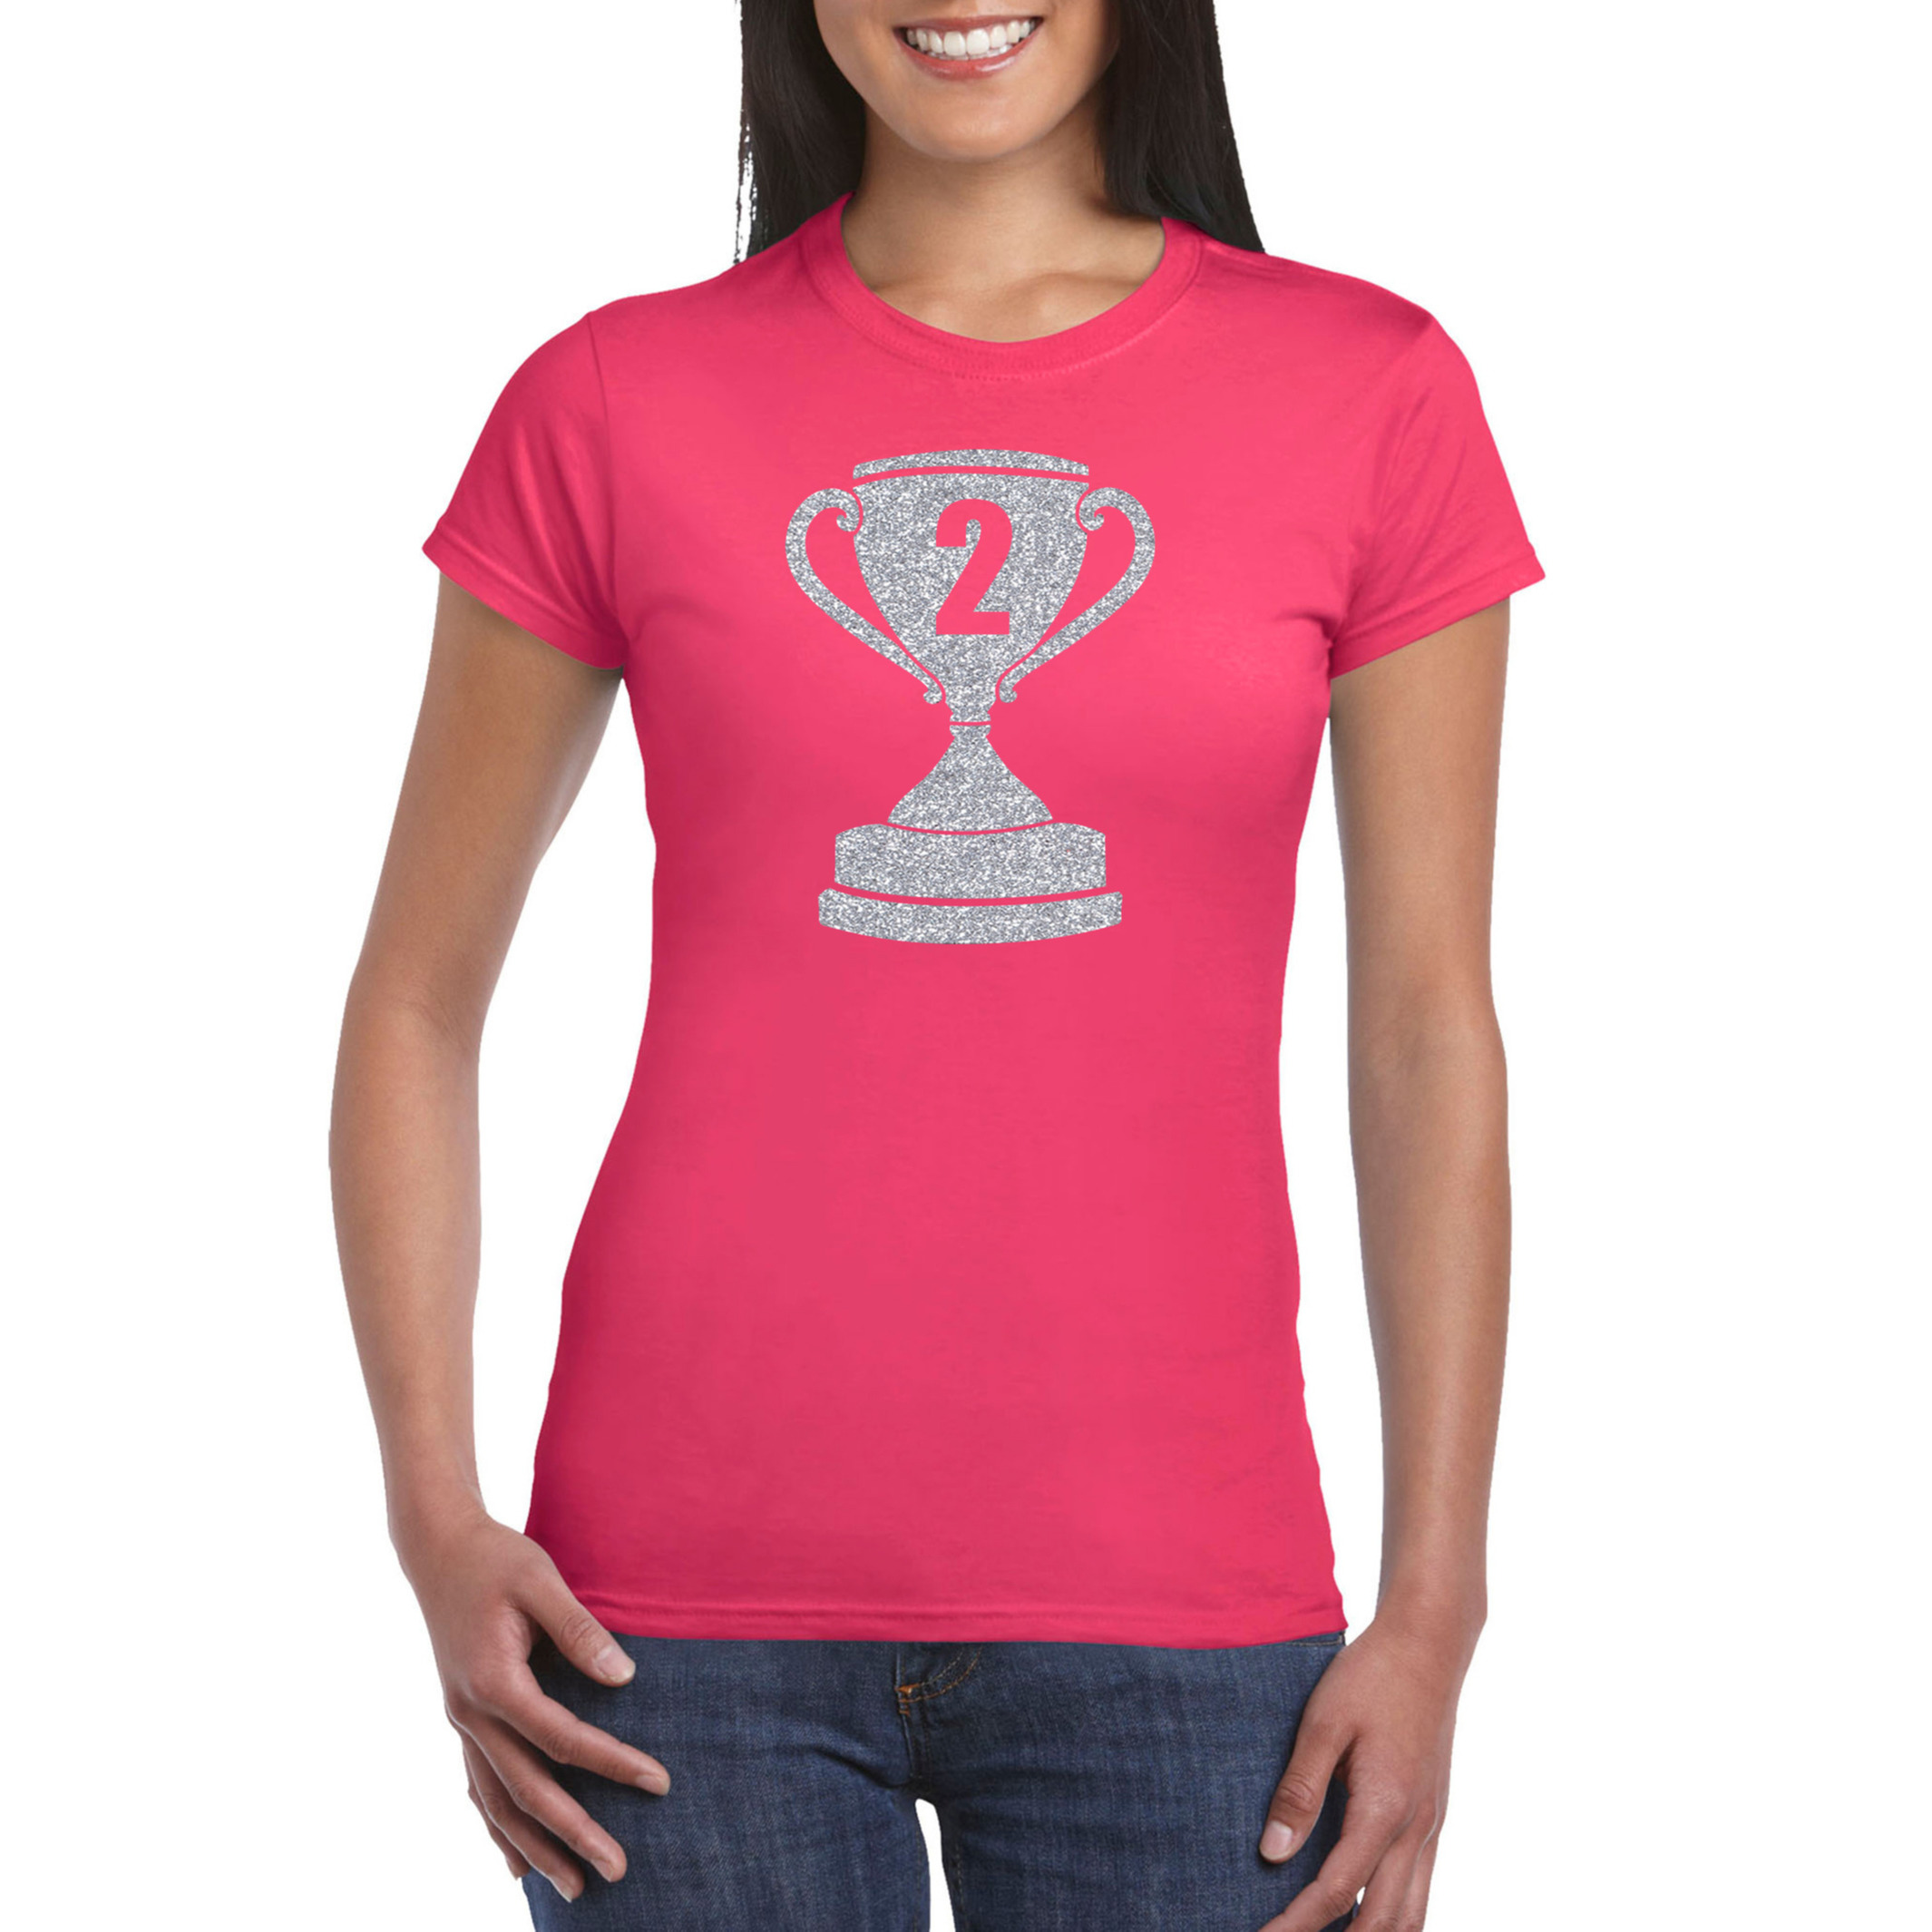 Zilveren kampioens beker-nummer 2 t-shirt-kleding roze dames